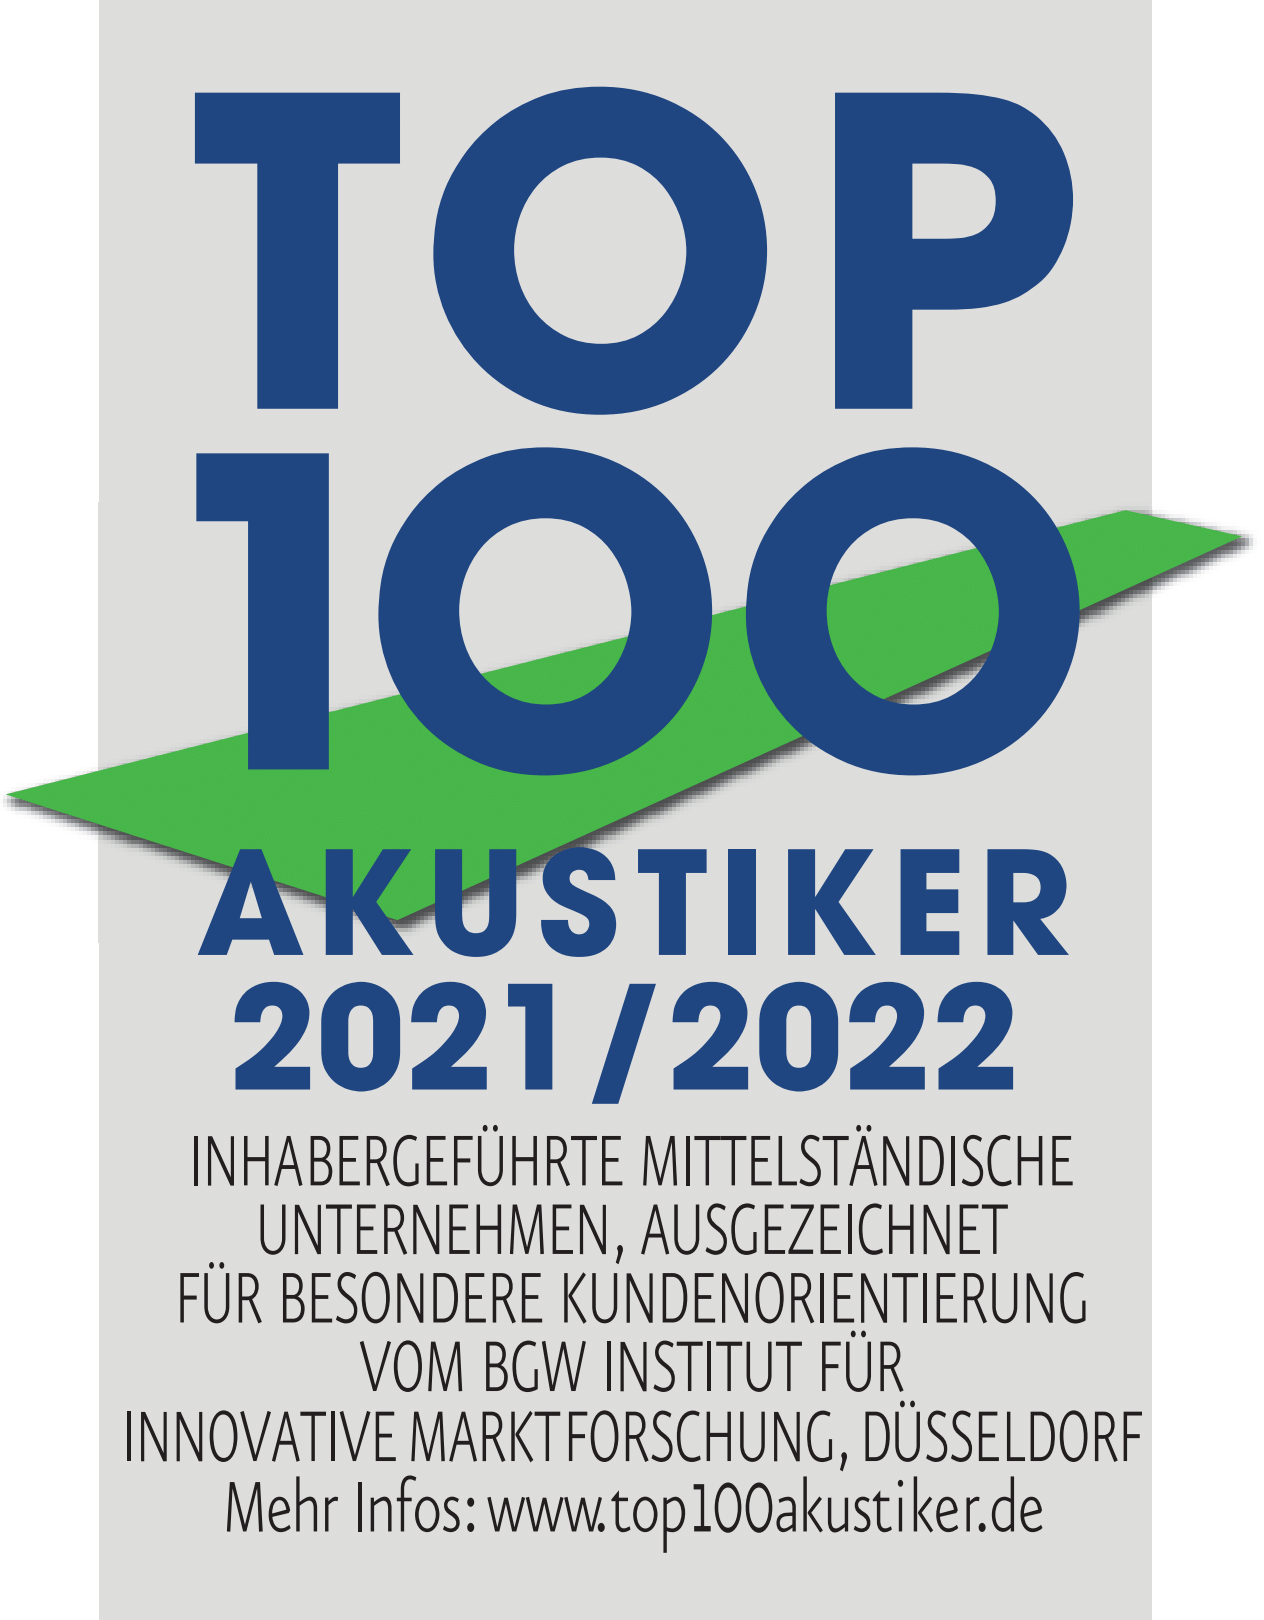 Auszeichnung TOP Akustiker 2021/2022